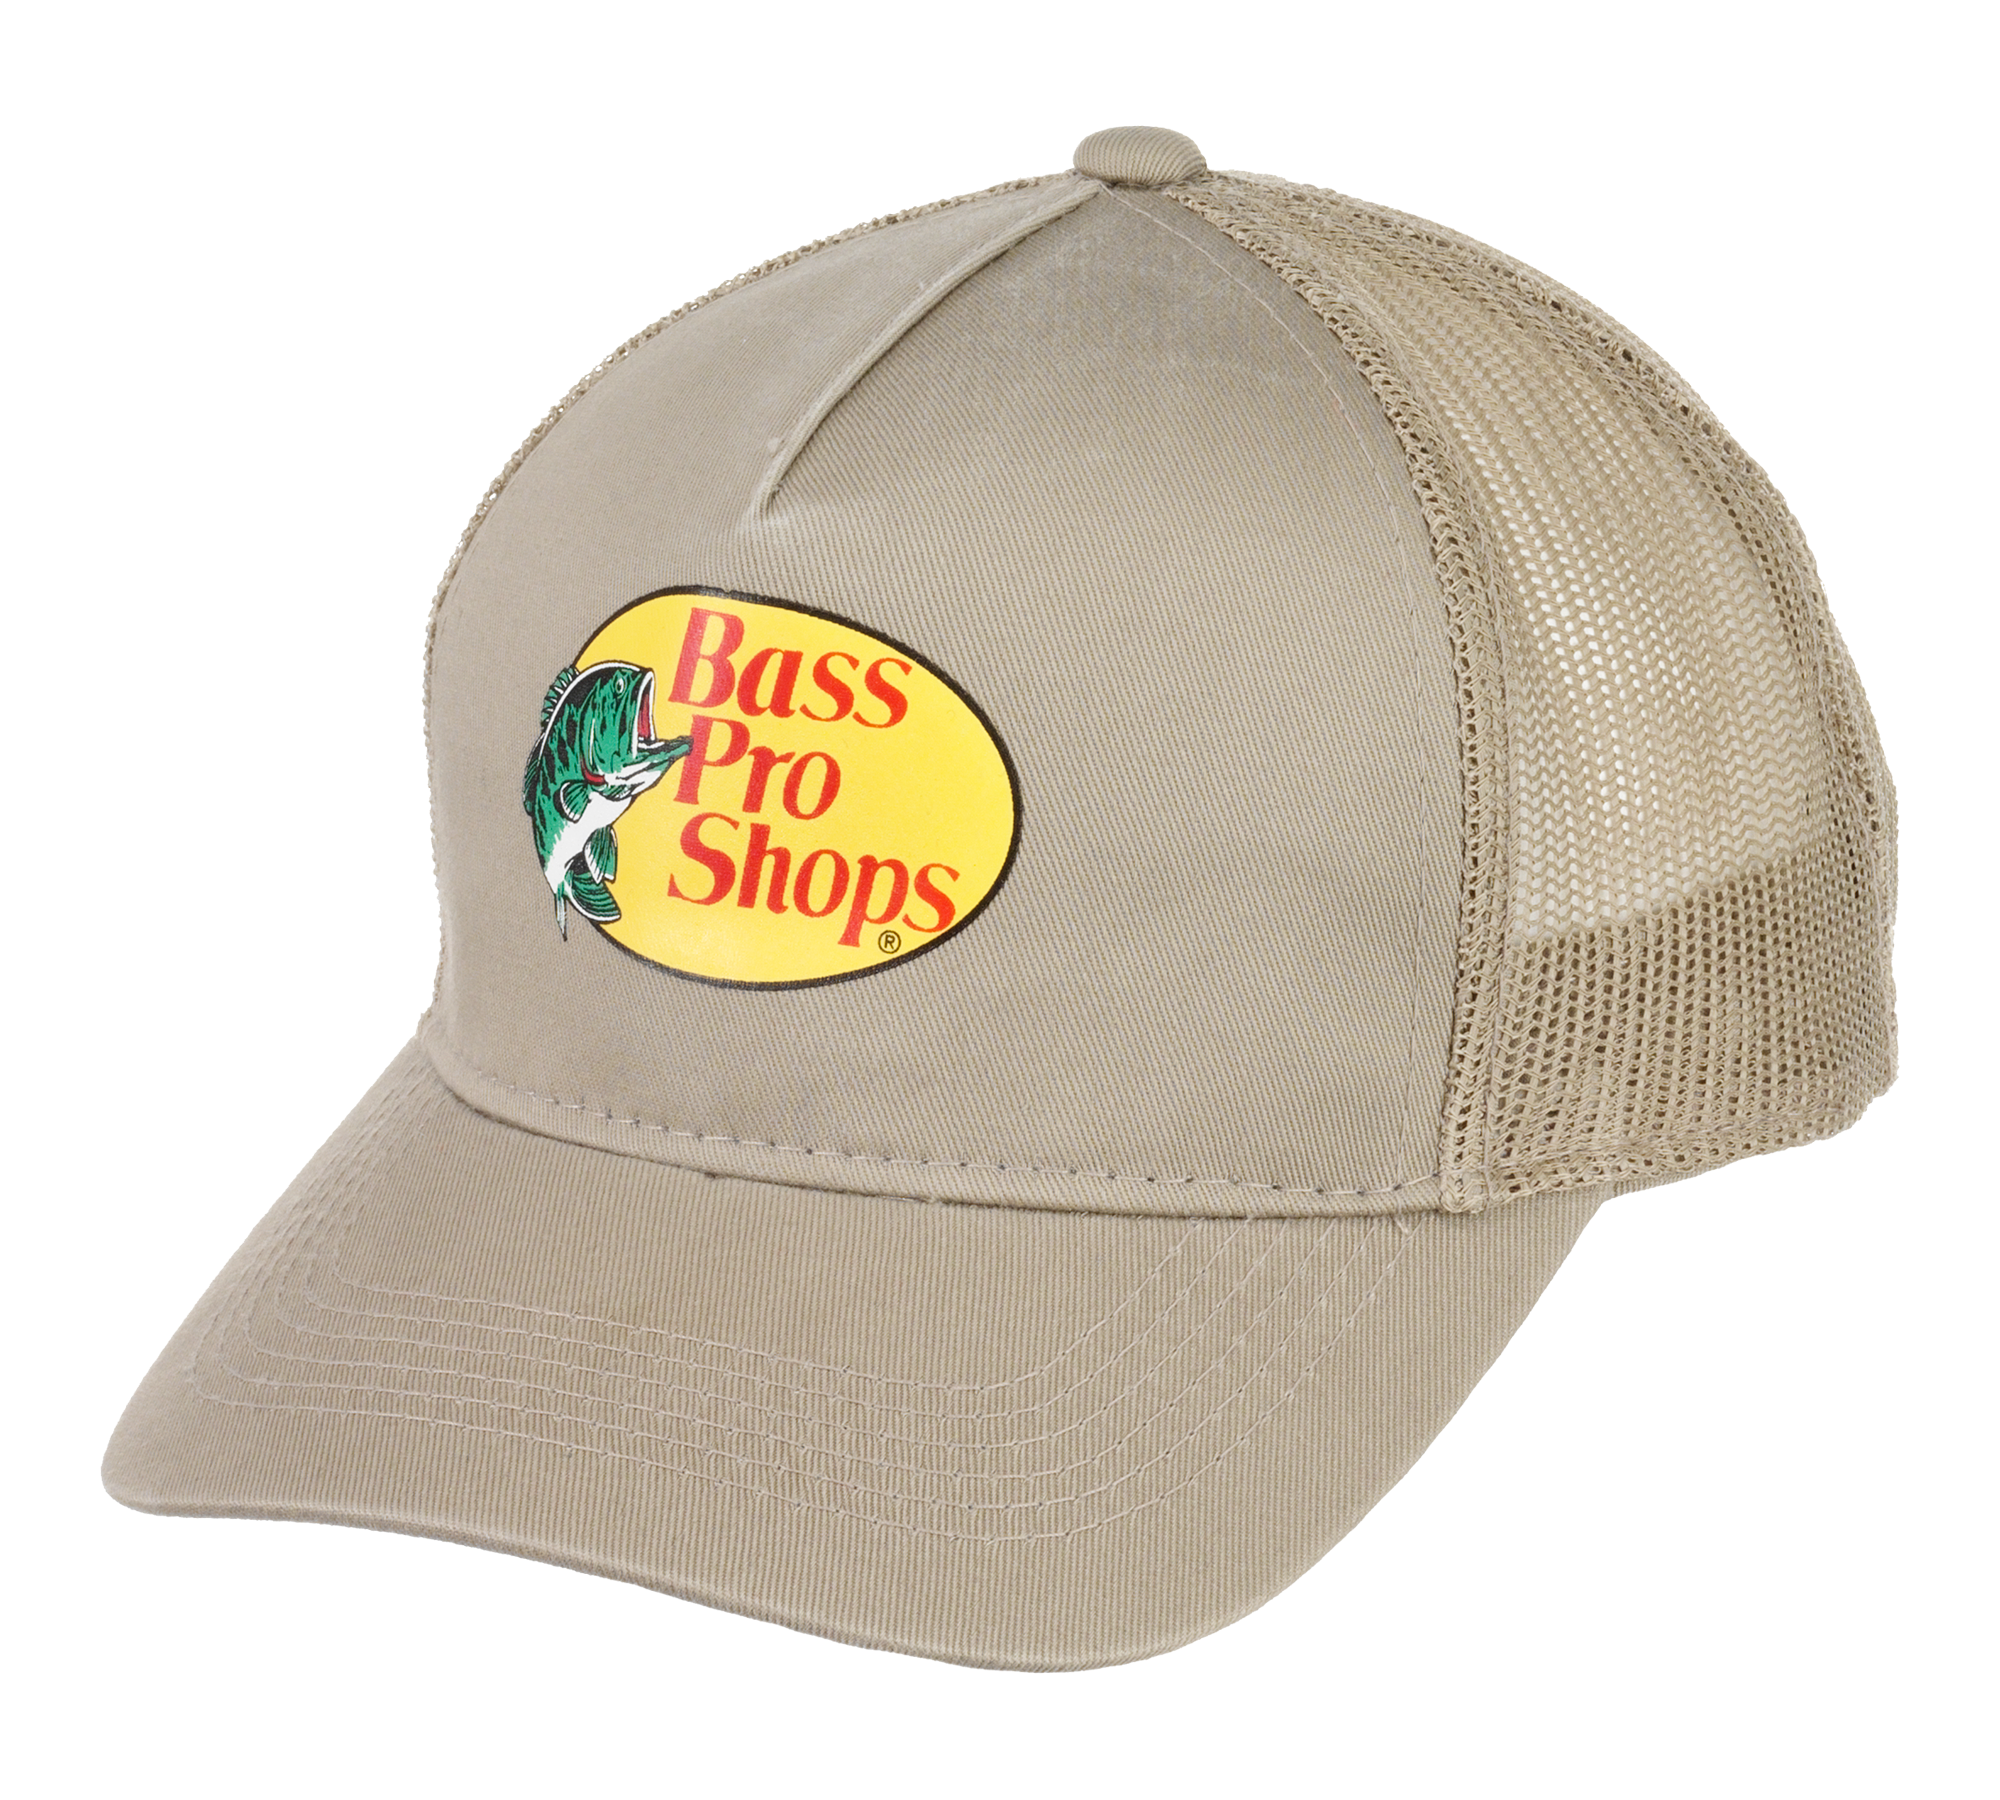 Bass Pro Shops Logo Mesh Cap For Kids, Wearing Bass Pro Shop Hats